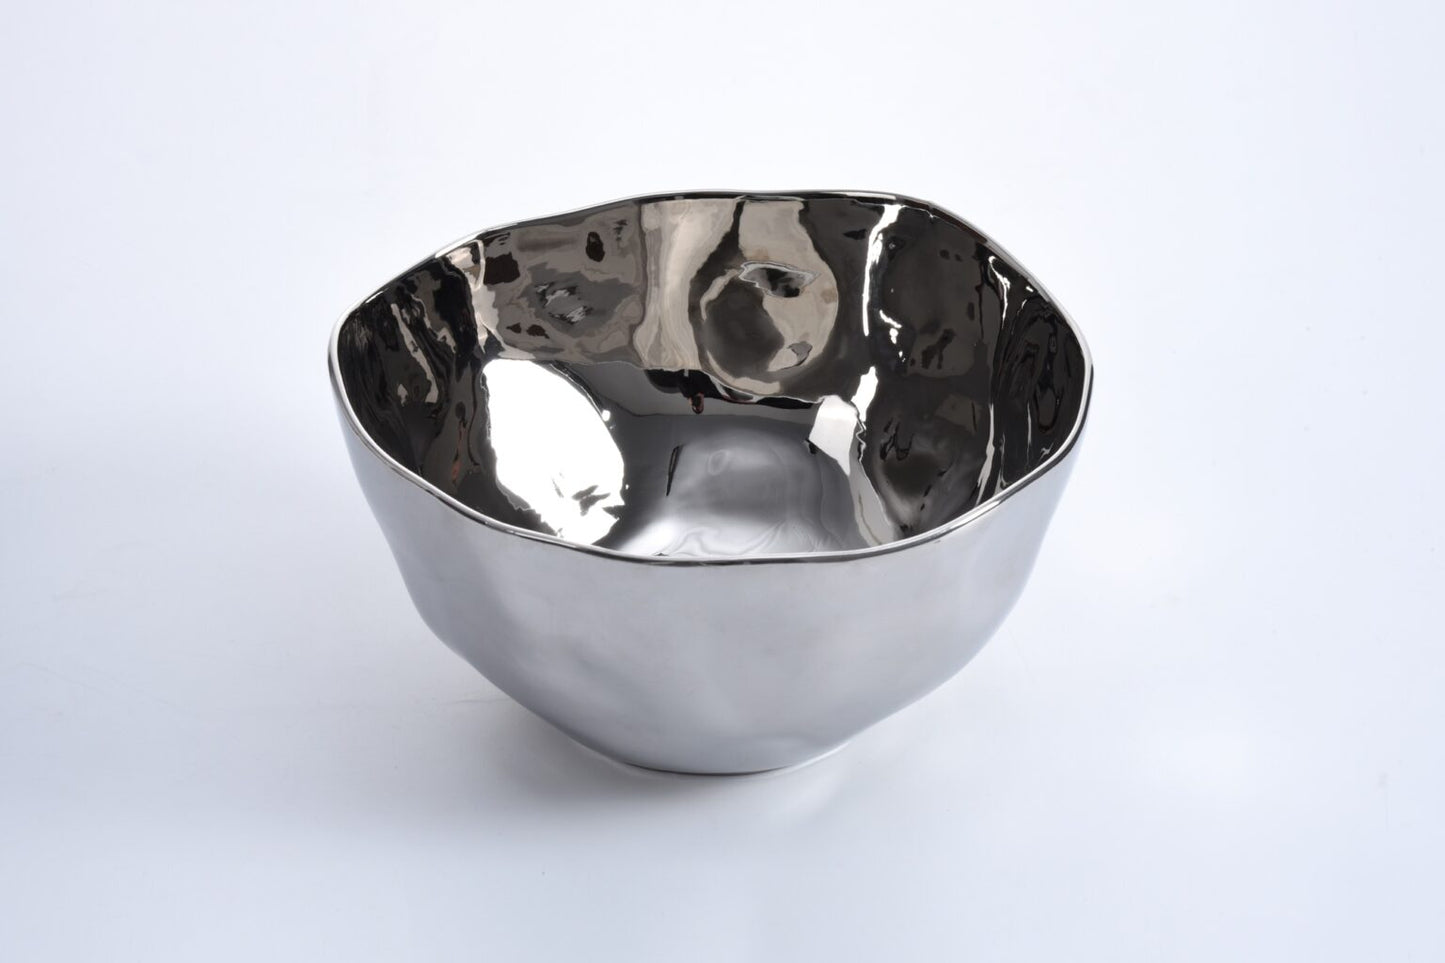 Extra large bowl
SKU: CER2597